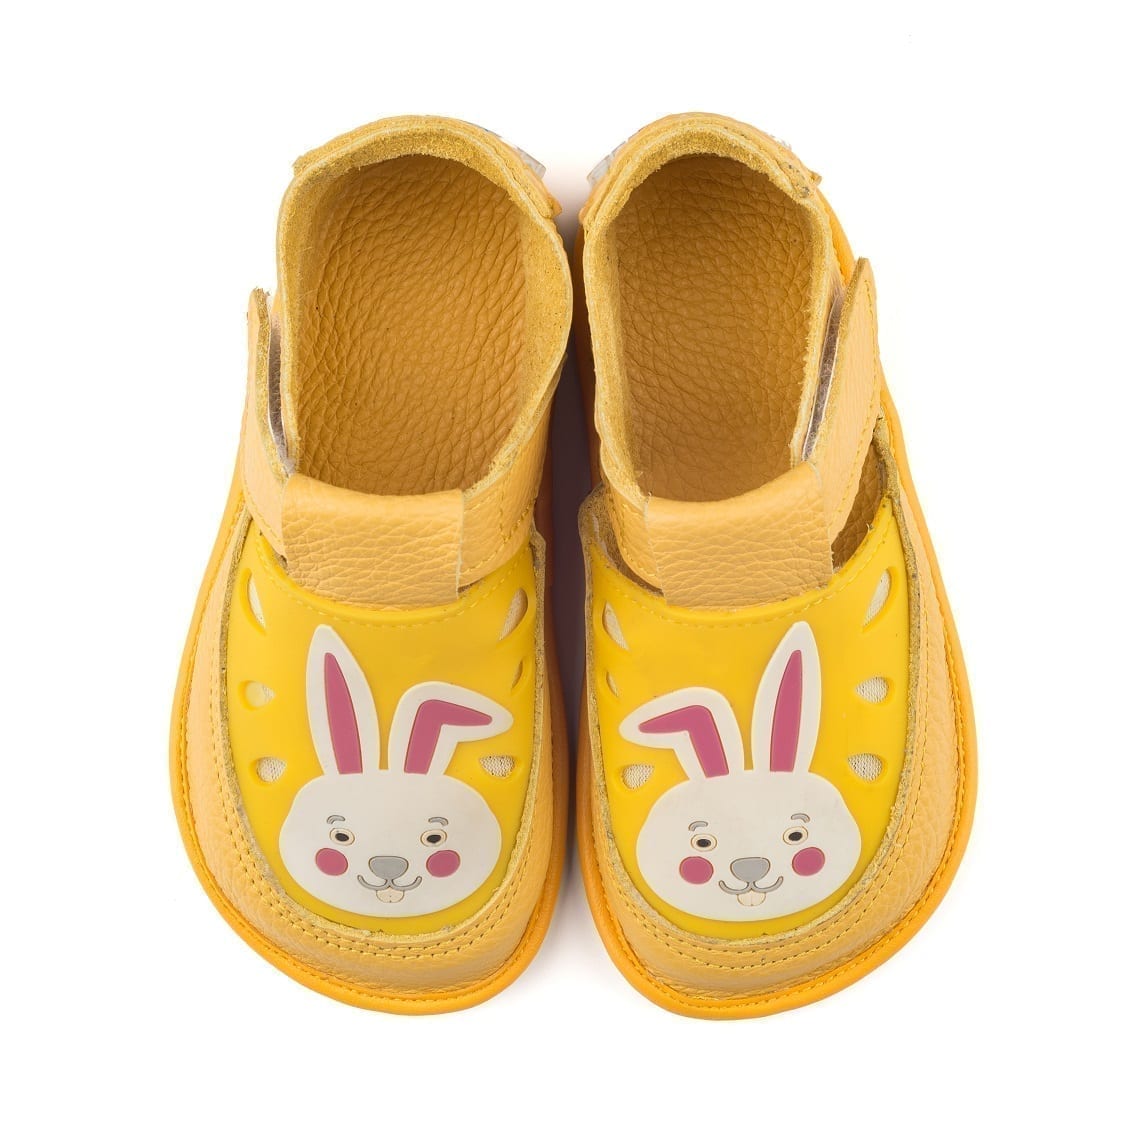 buty do nauki chodzenia - Magical SHoes buty minimalistyczne dla dzieci